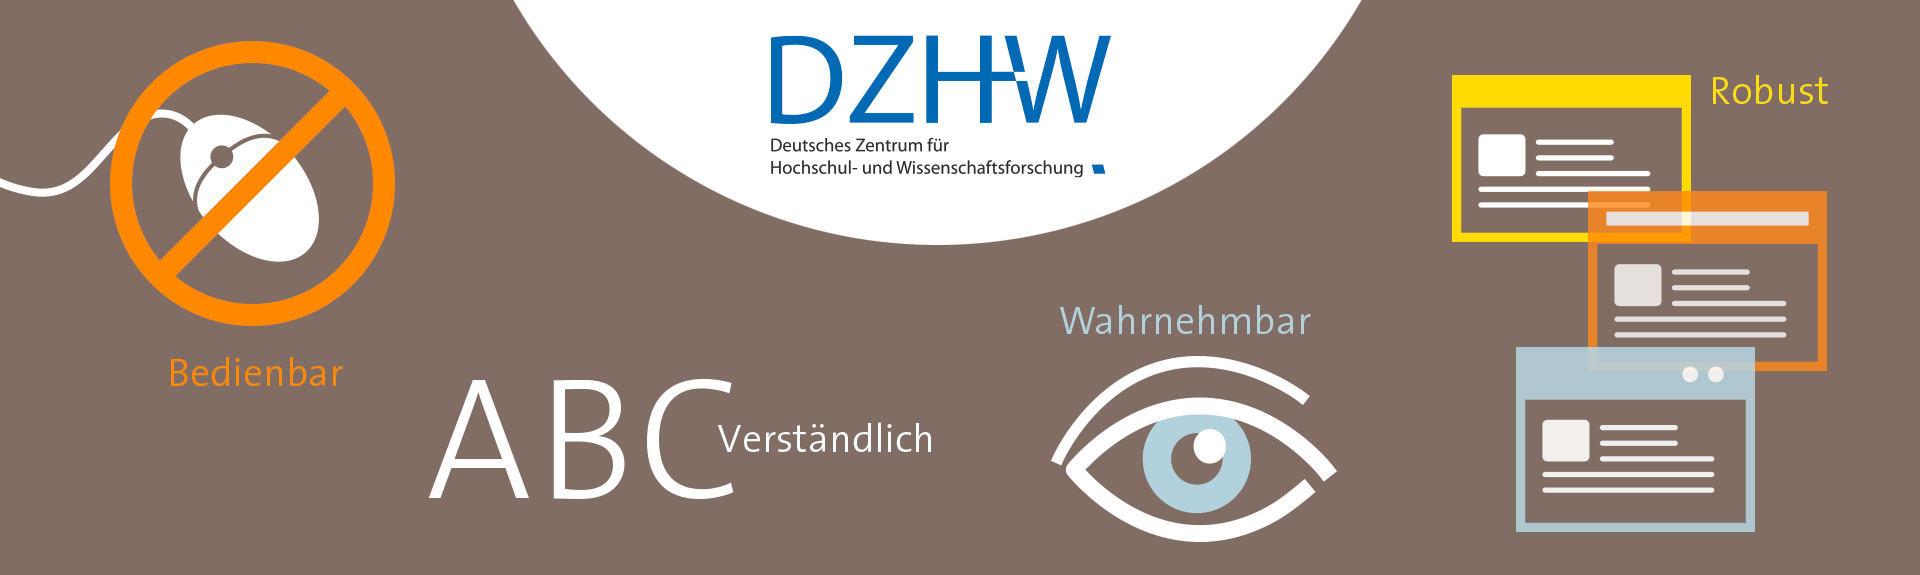 Beratung und Schulung zur Barrierefreiheit nach BITV des Deutschen Zentrum für Hochschul- und Wissenschaftsforschung (DZHW)